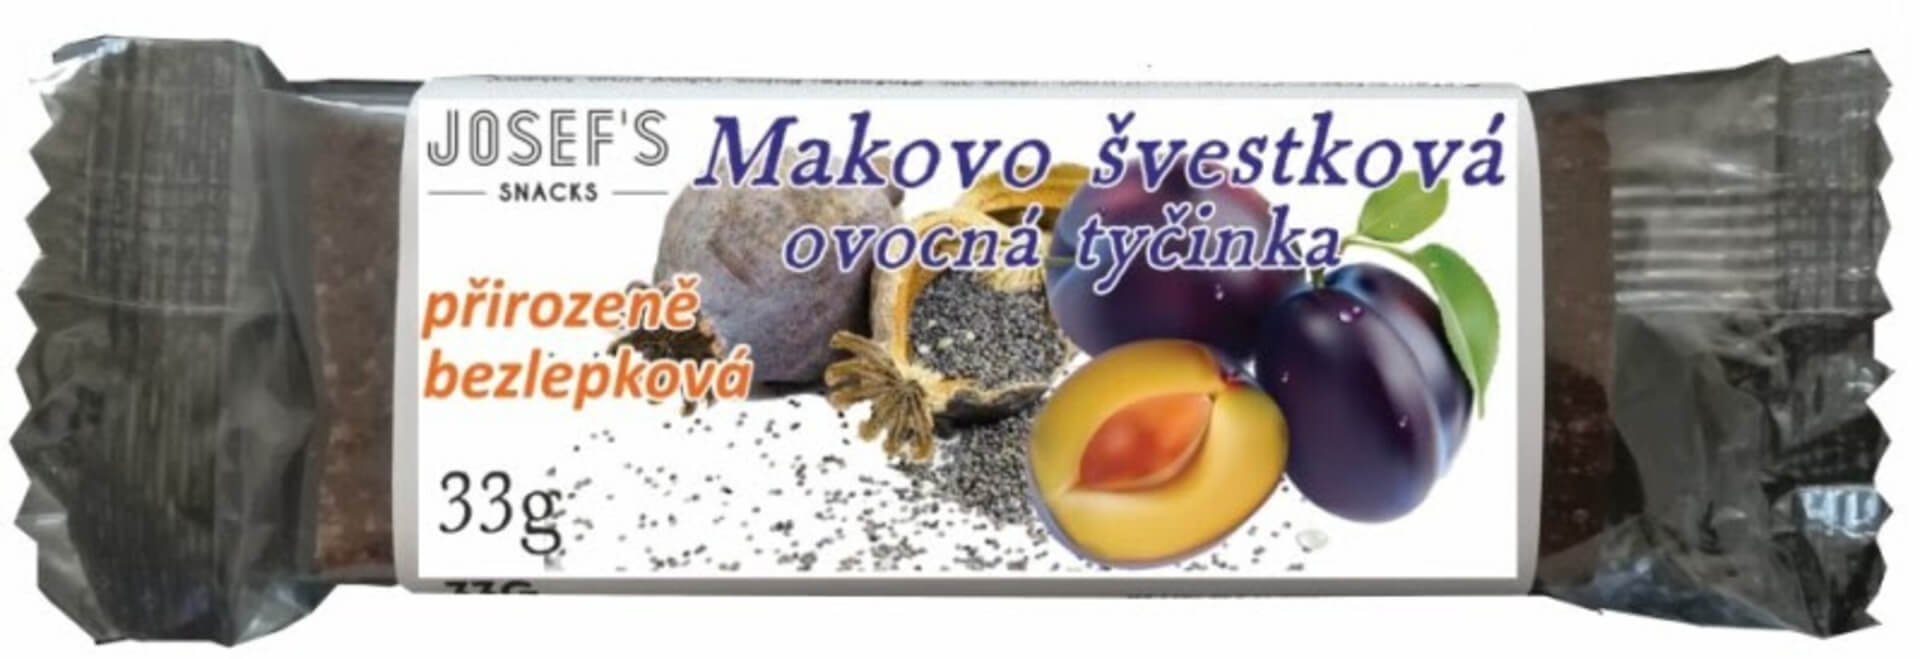 Levně Josef's snacks Makovo švestková bez lepku 33 g